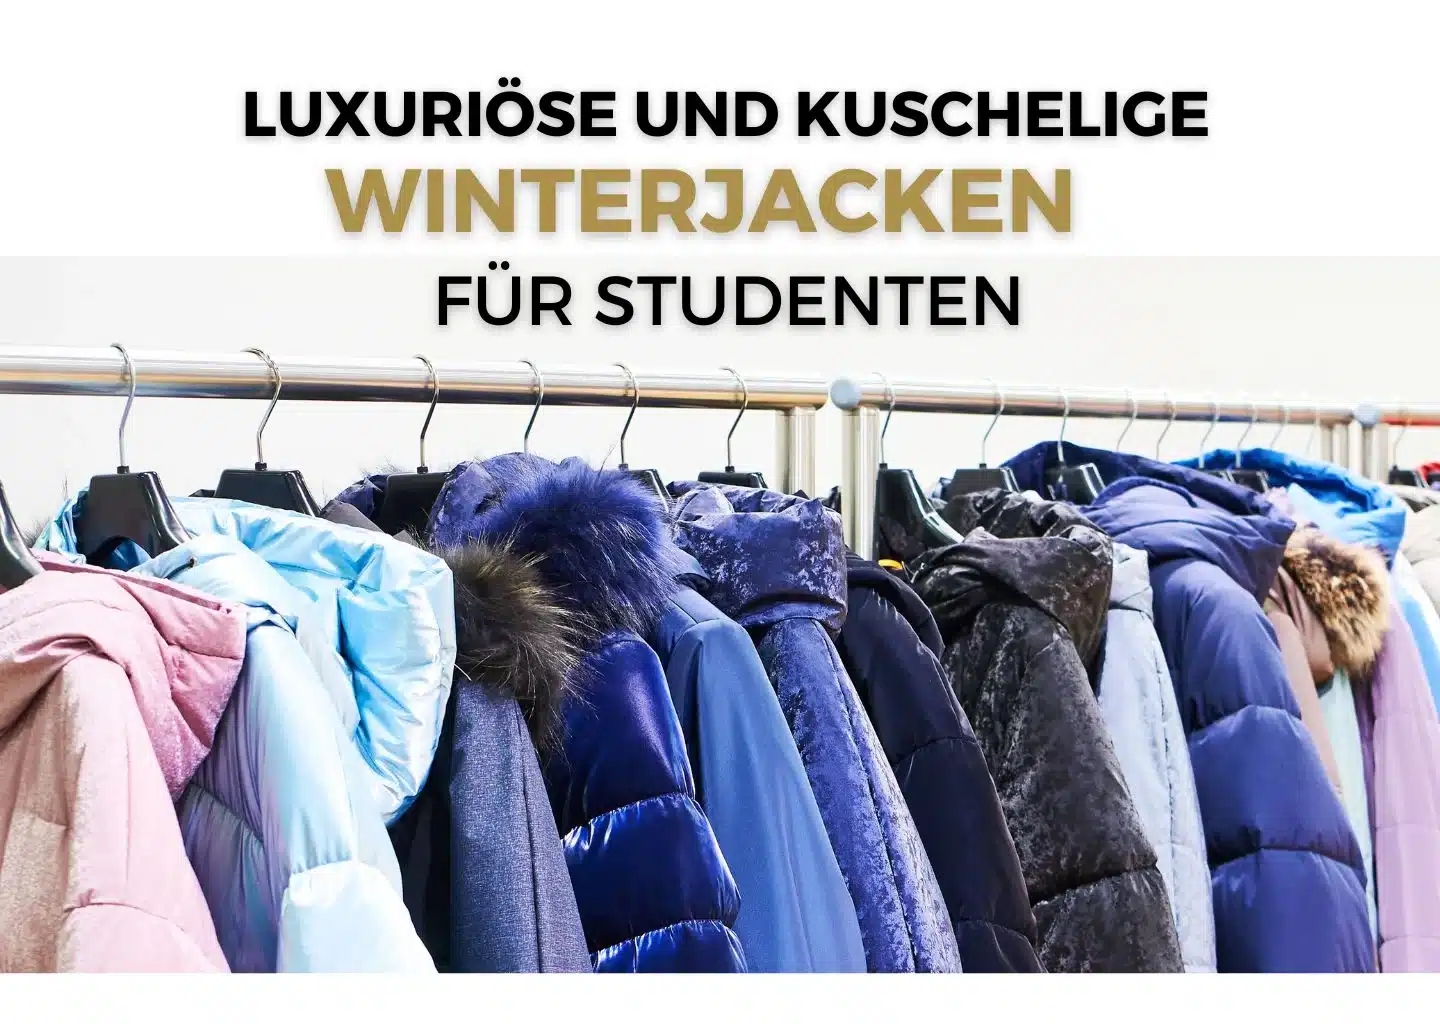 Luxuriöse und kuschelige Winterjacken für Studenten in den Winterthurer Läden